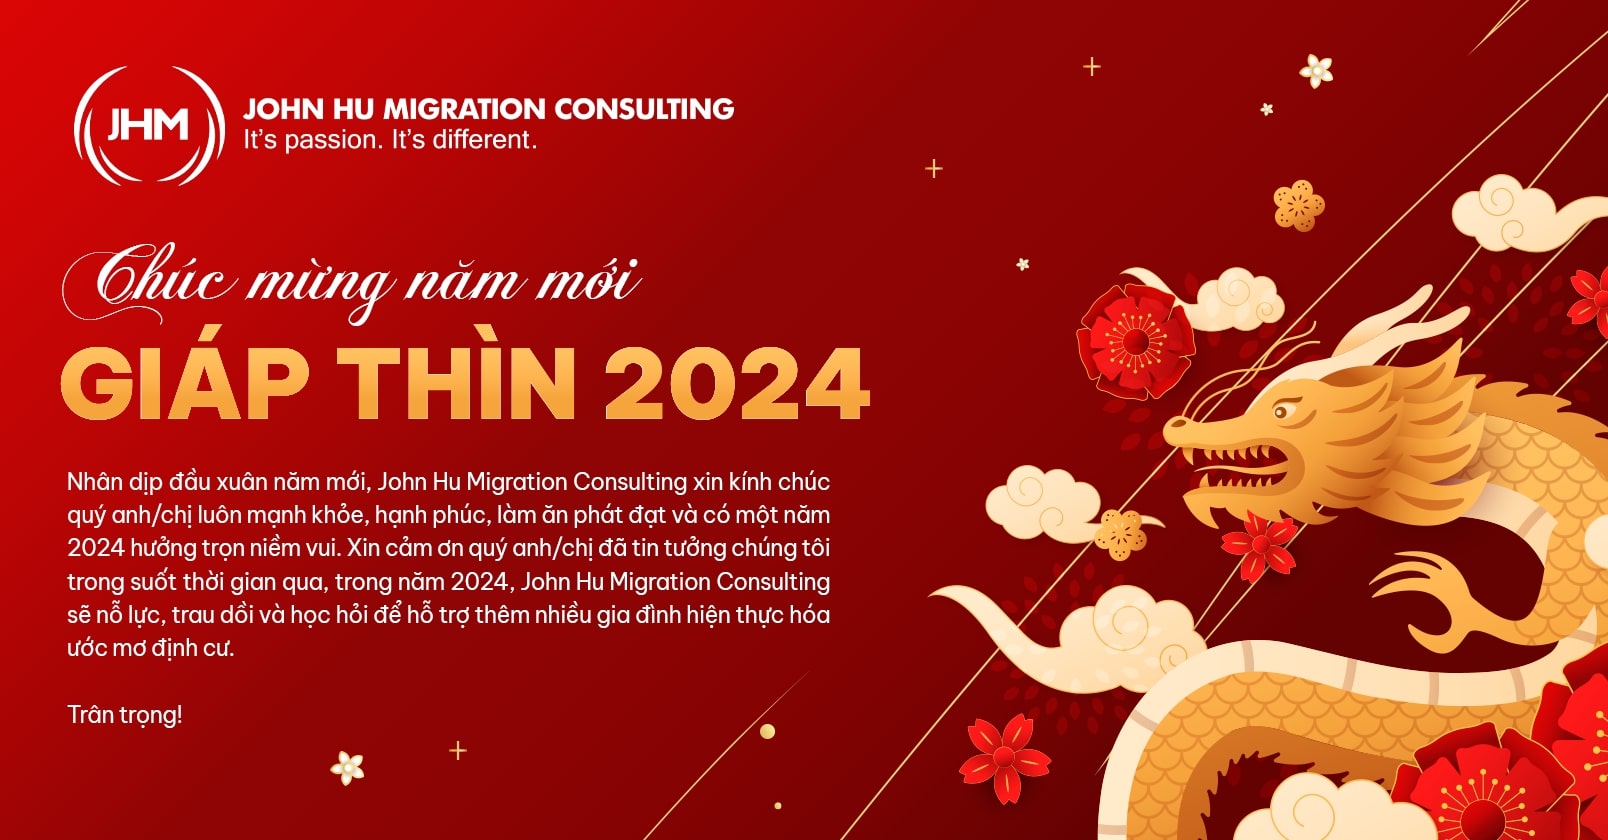 John Hu Migration kính chúc quý khách hàng năm mới Giáp Thìn 2024 sức khỏe, an khang thịnh vượng